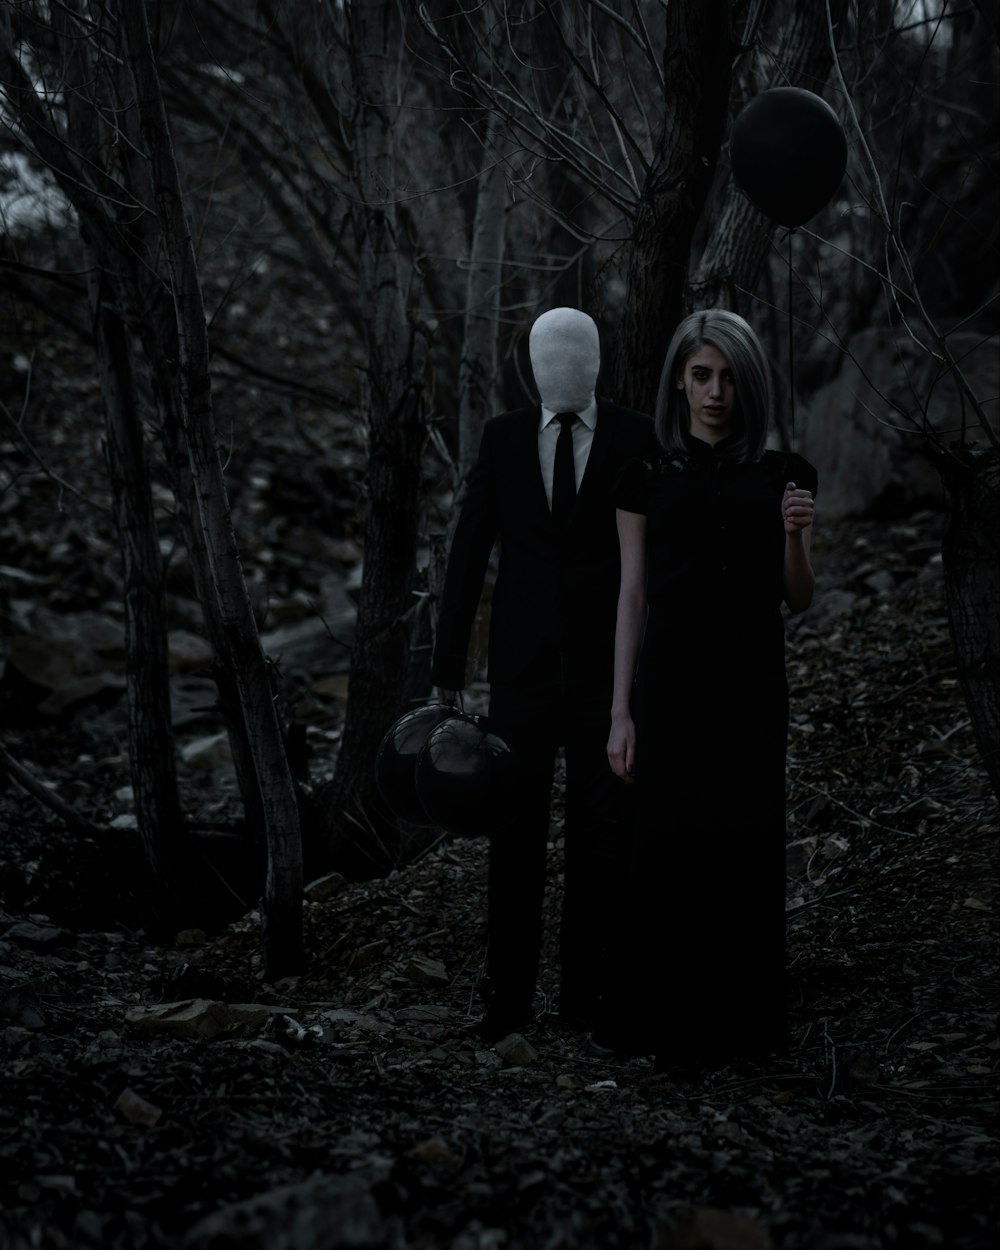 숲 한가운데에 서 있는 남자와 여자